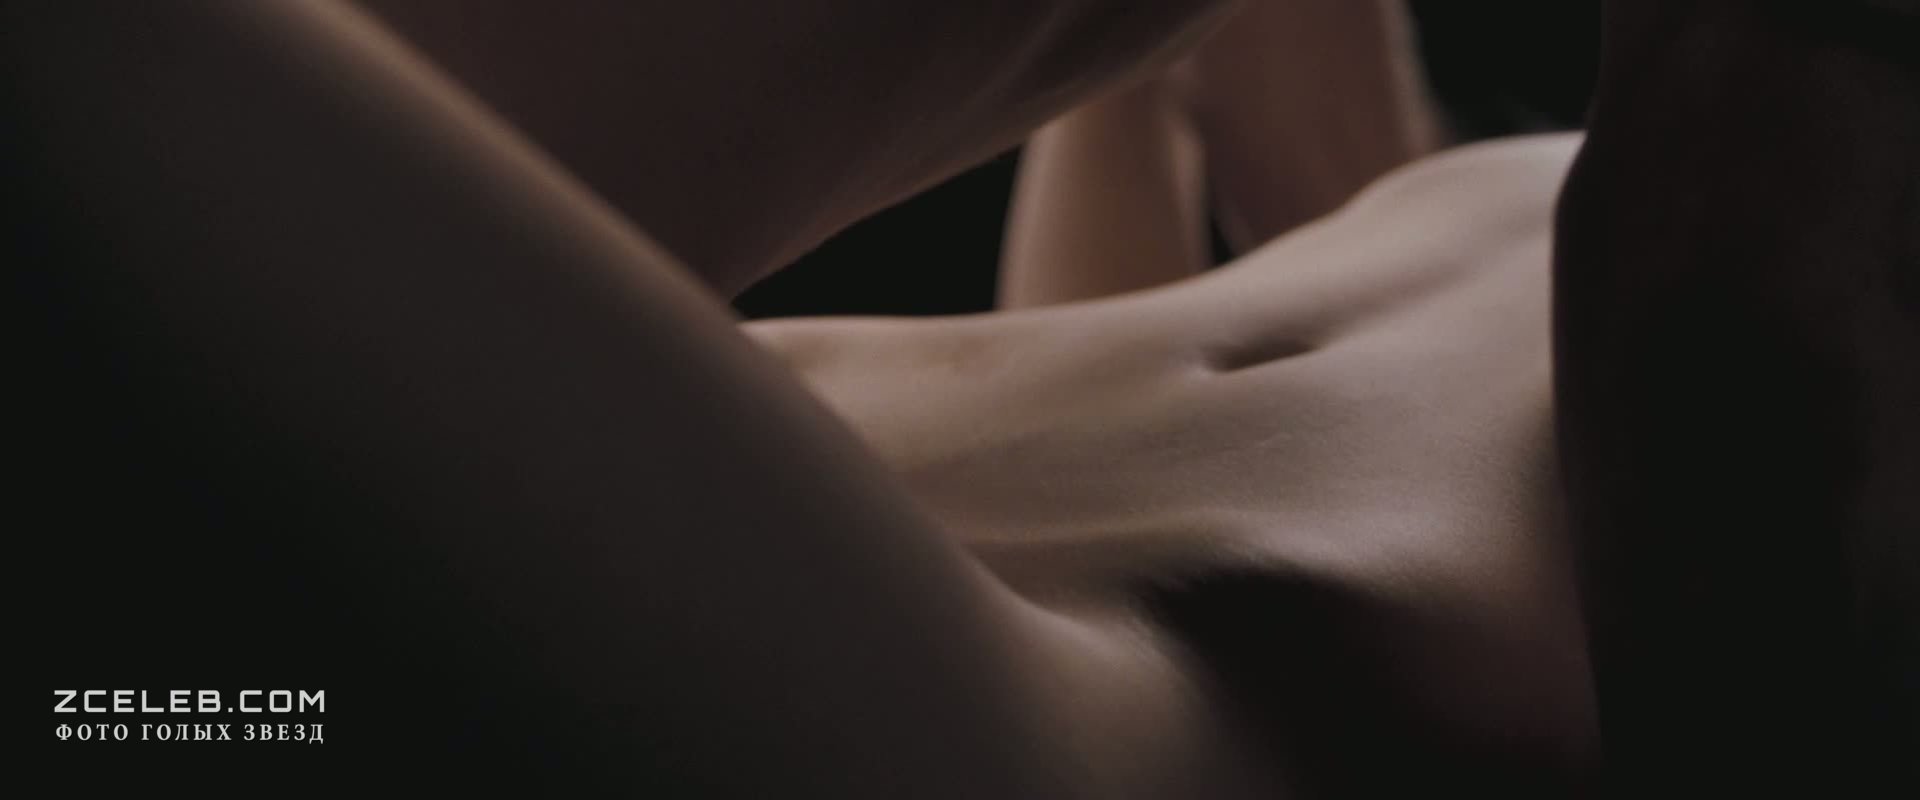 Страстная Кейт Бекинсейл занимается сексом в фильме «Другой мир 2:  Эволюция», 2005 / ZCELEB.COM